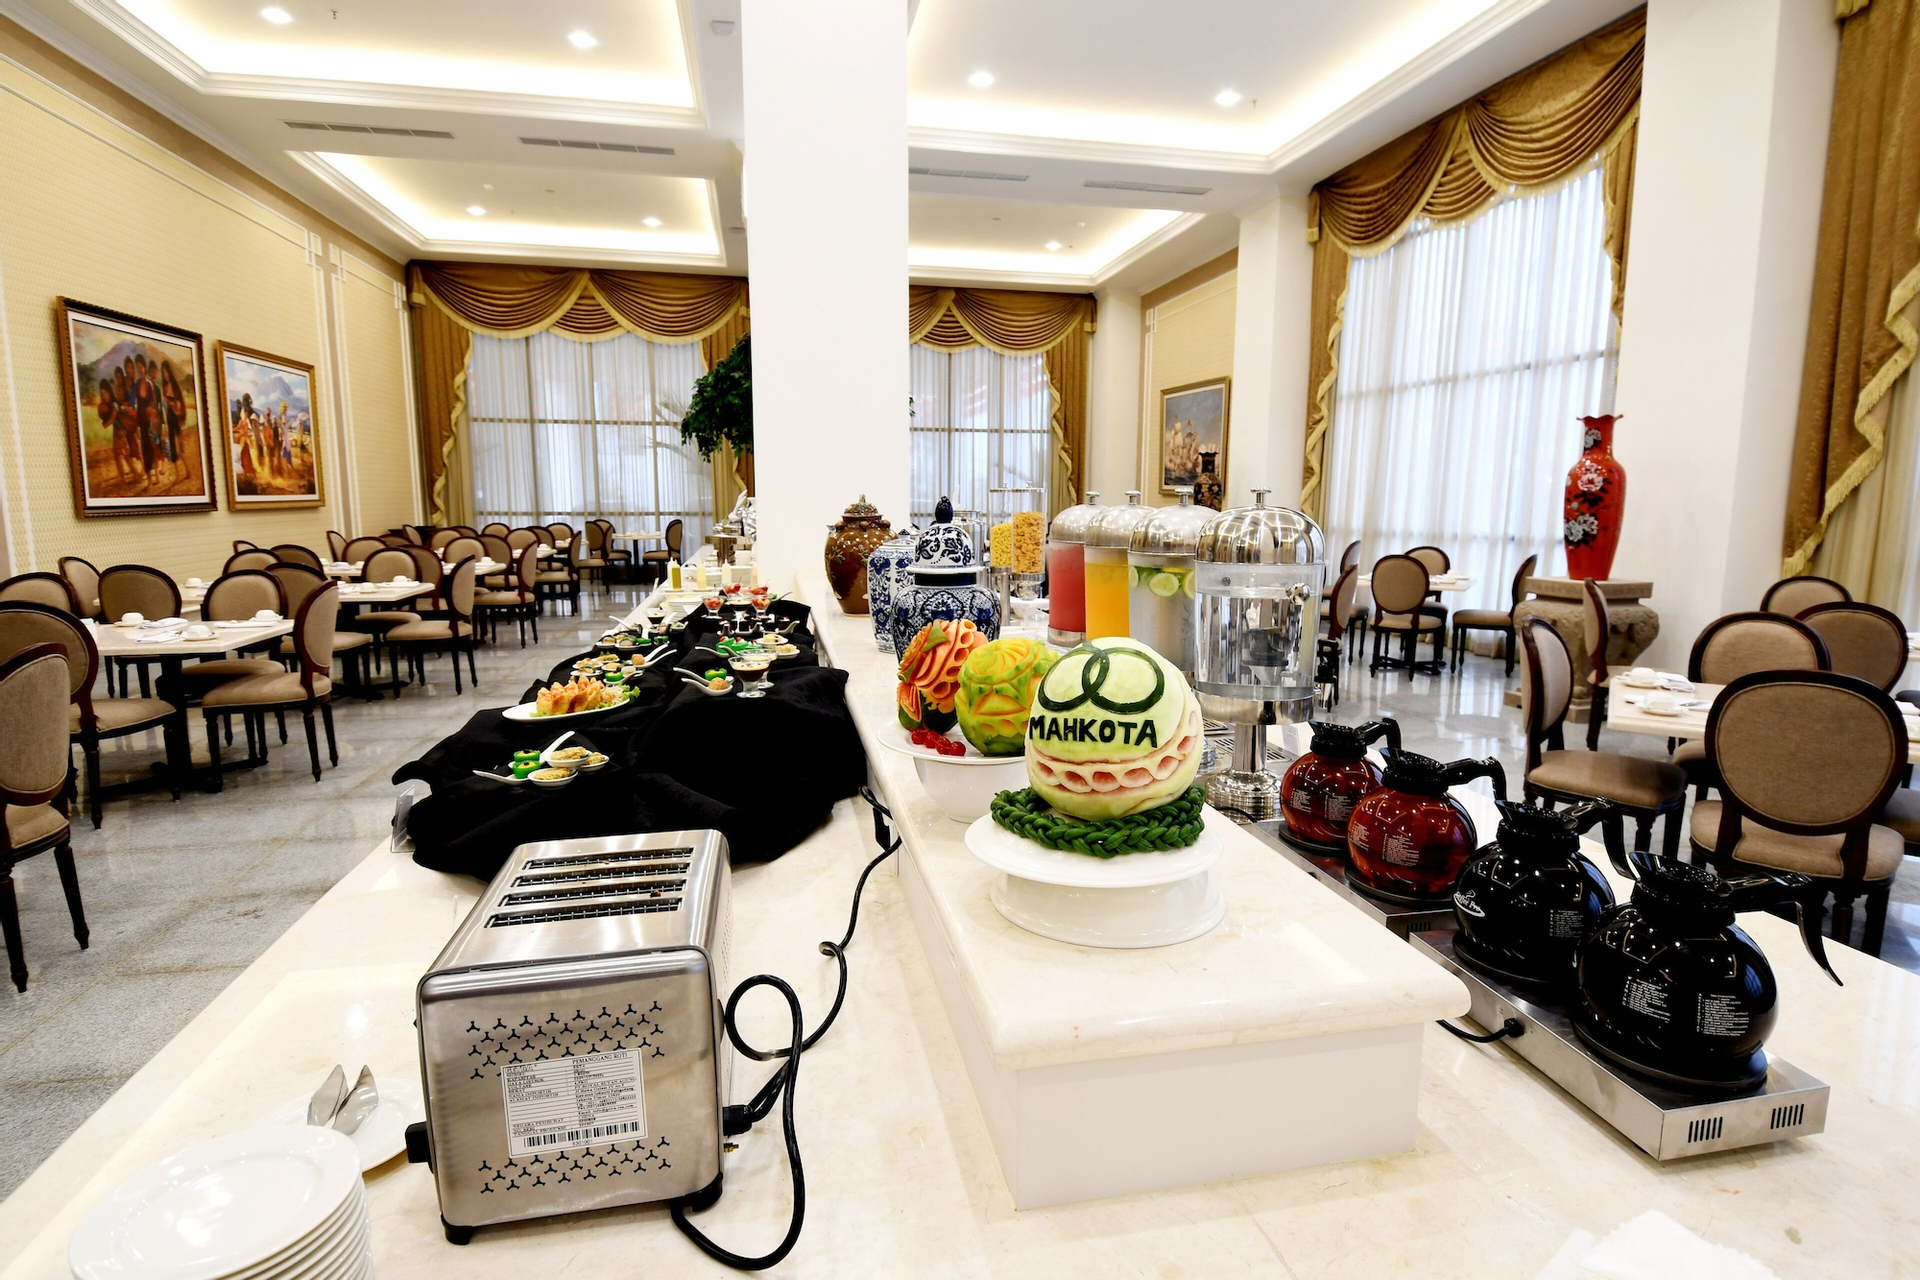 Food & Drinks 3, Mahkota Hotel Singkawang, Singkawang